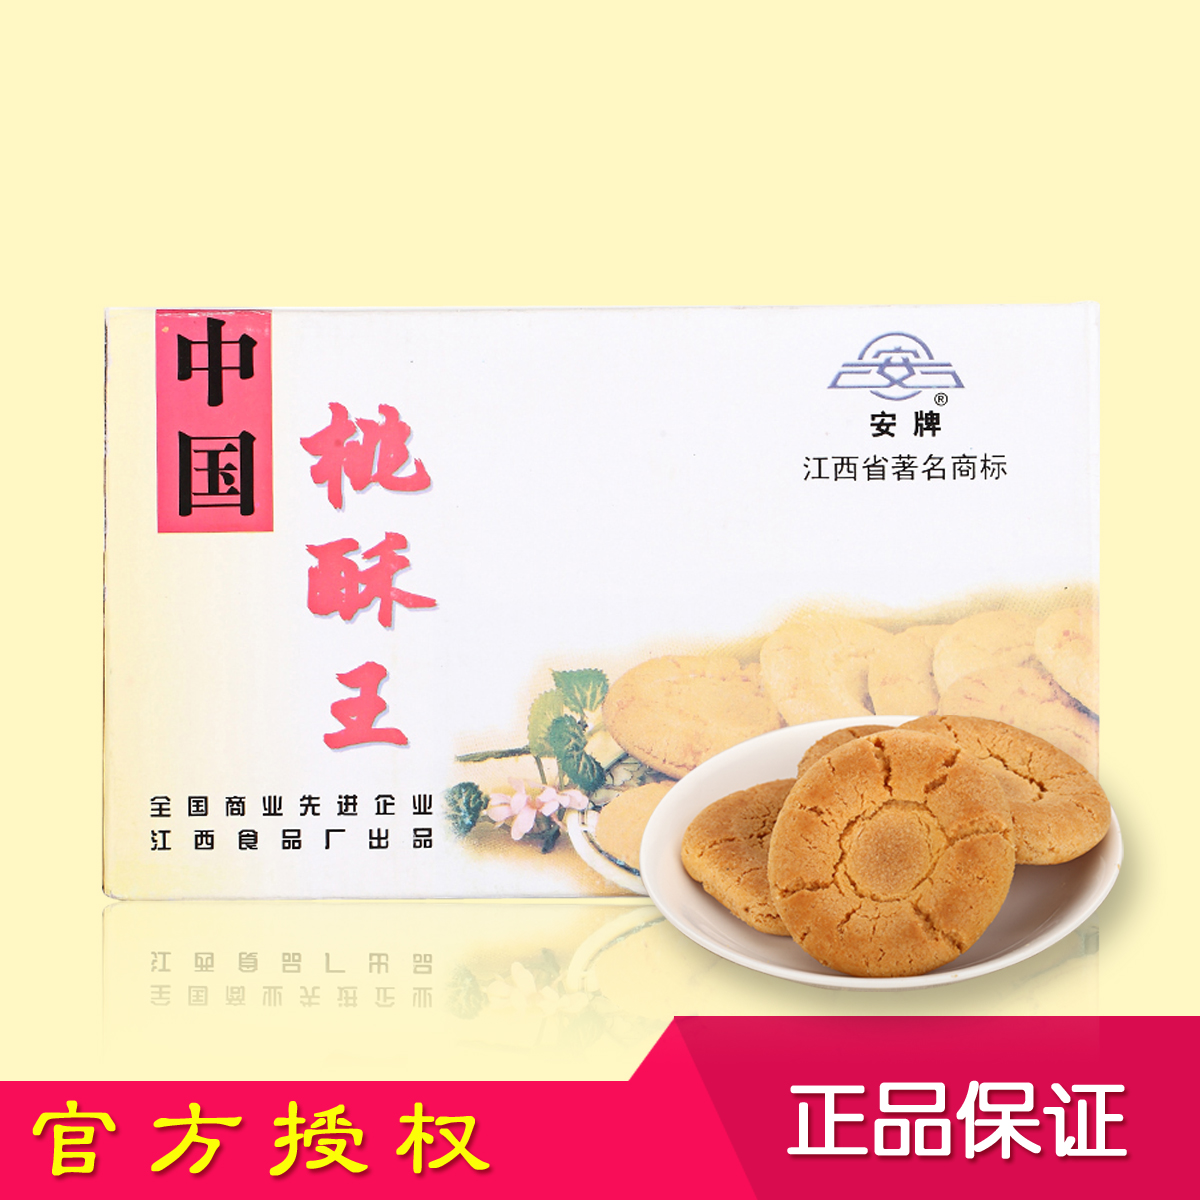 江西乐平特产安牌桃酥王500克原味饼盒装寿饼喜饼正宗国营老牌-封面